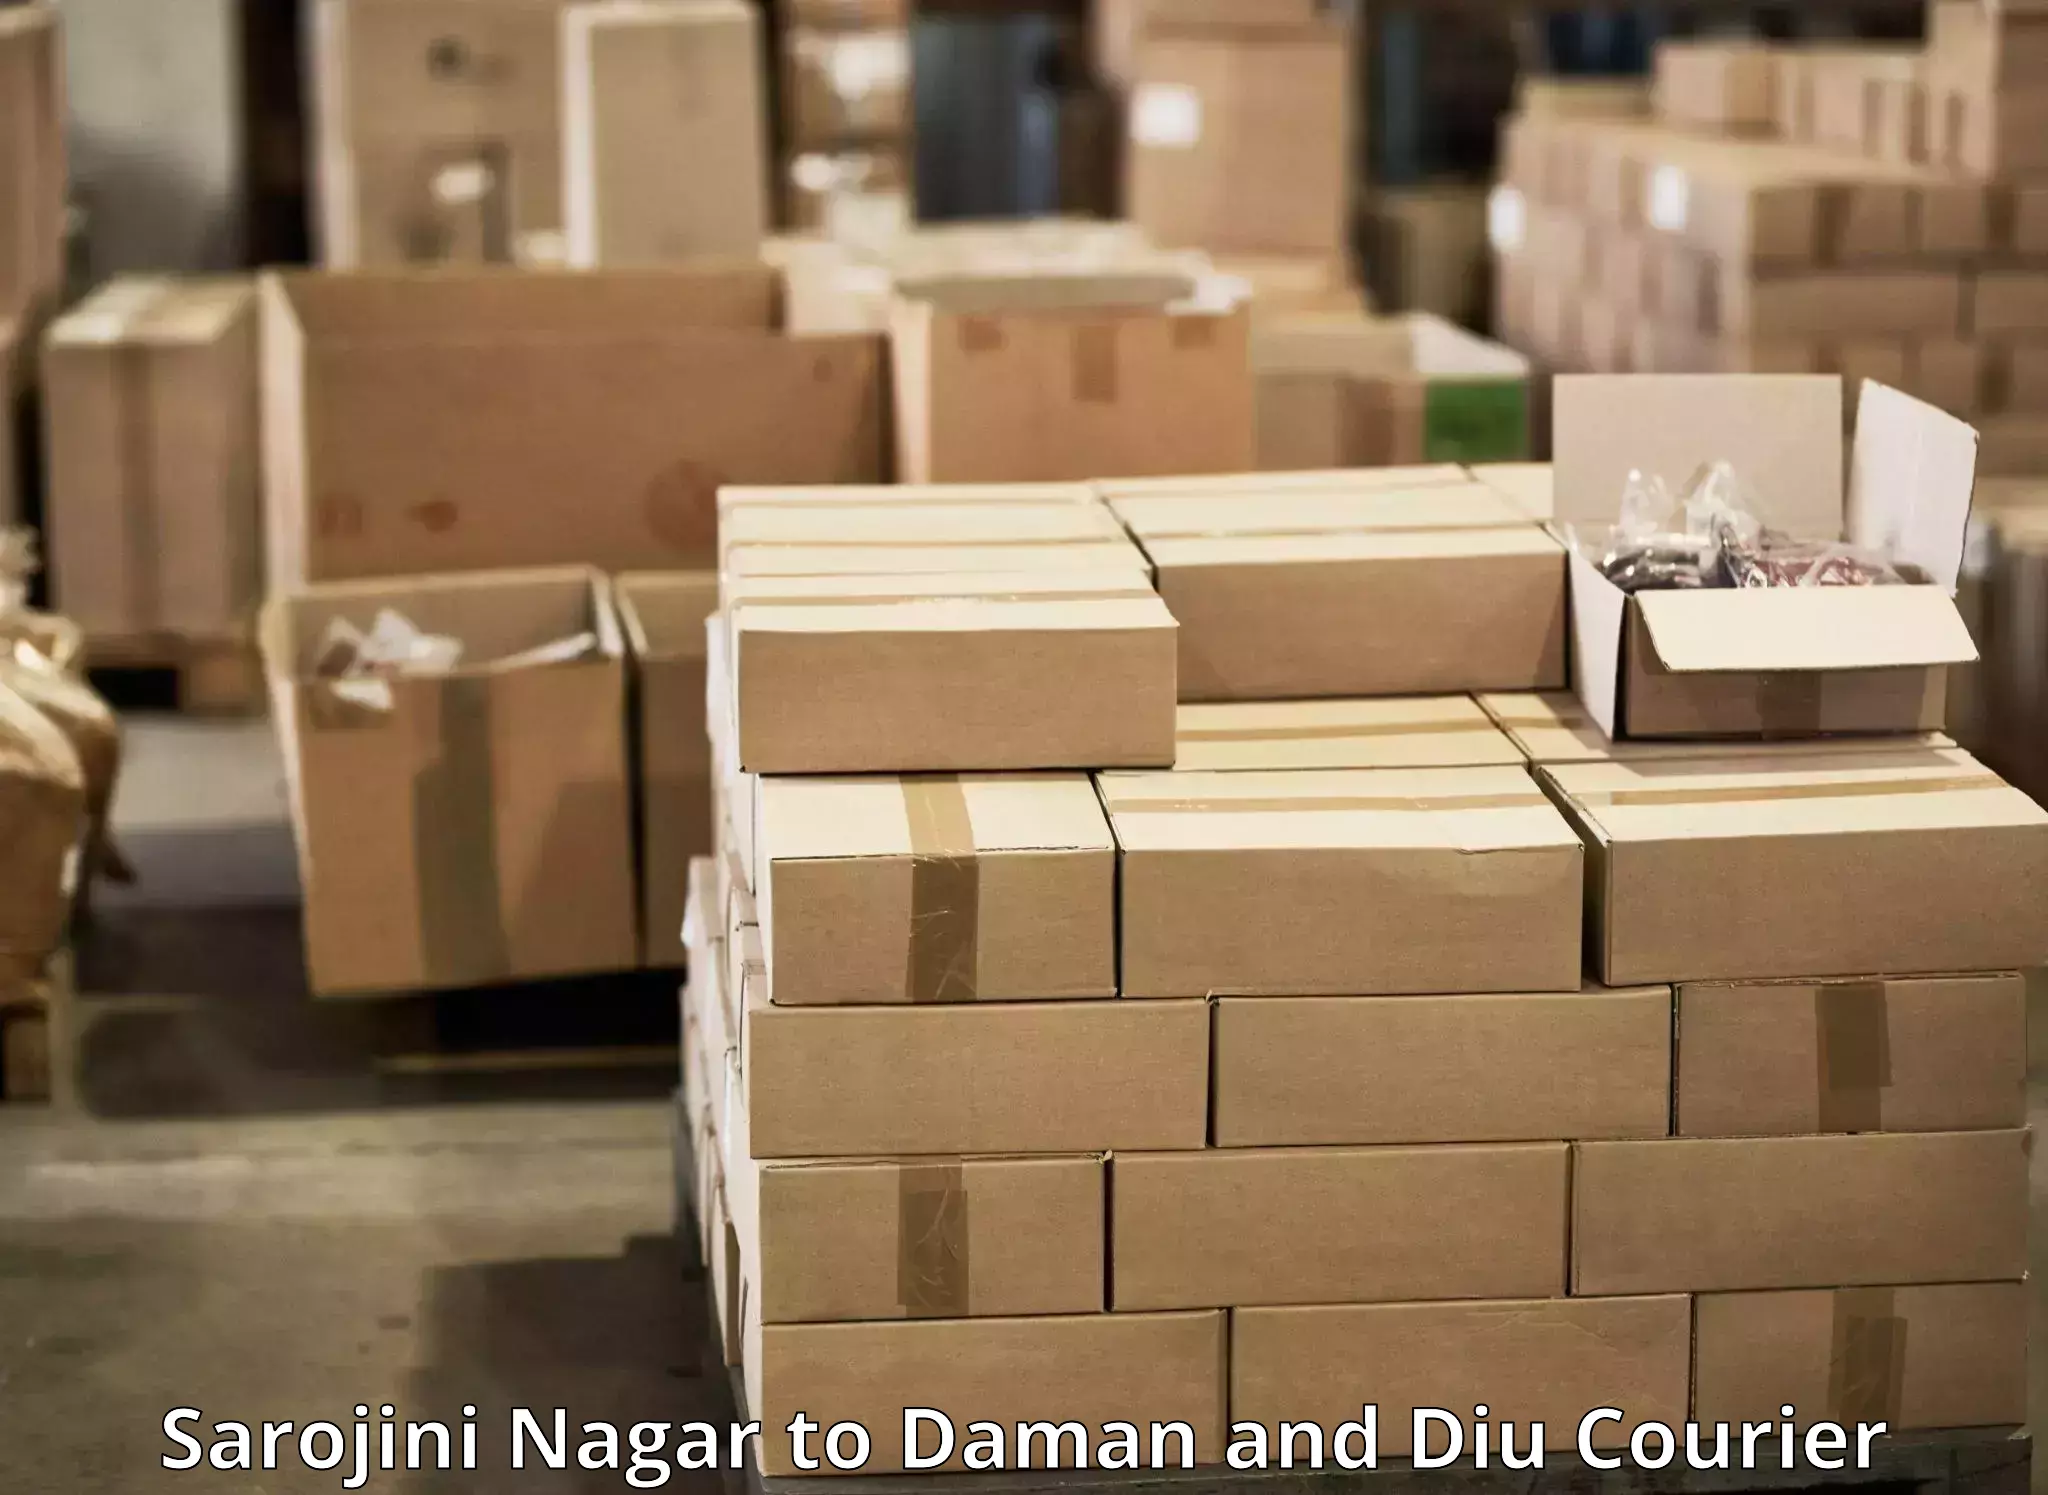 Efficient parcel service Sarojini Nagar to Diu